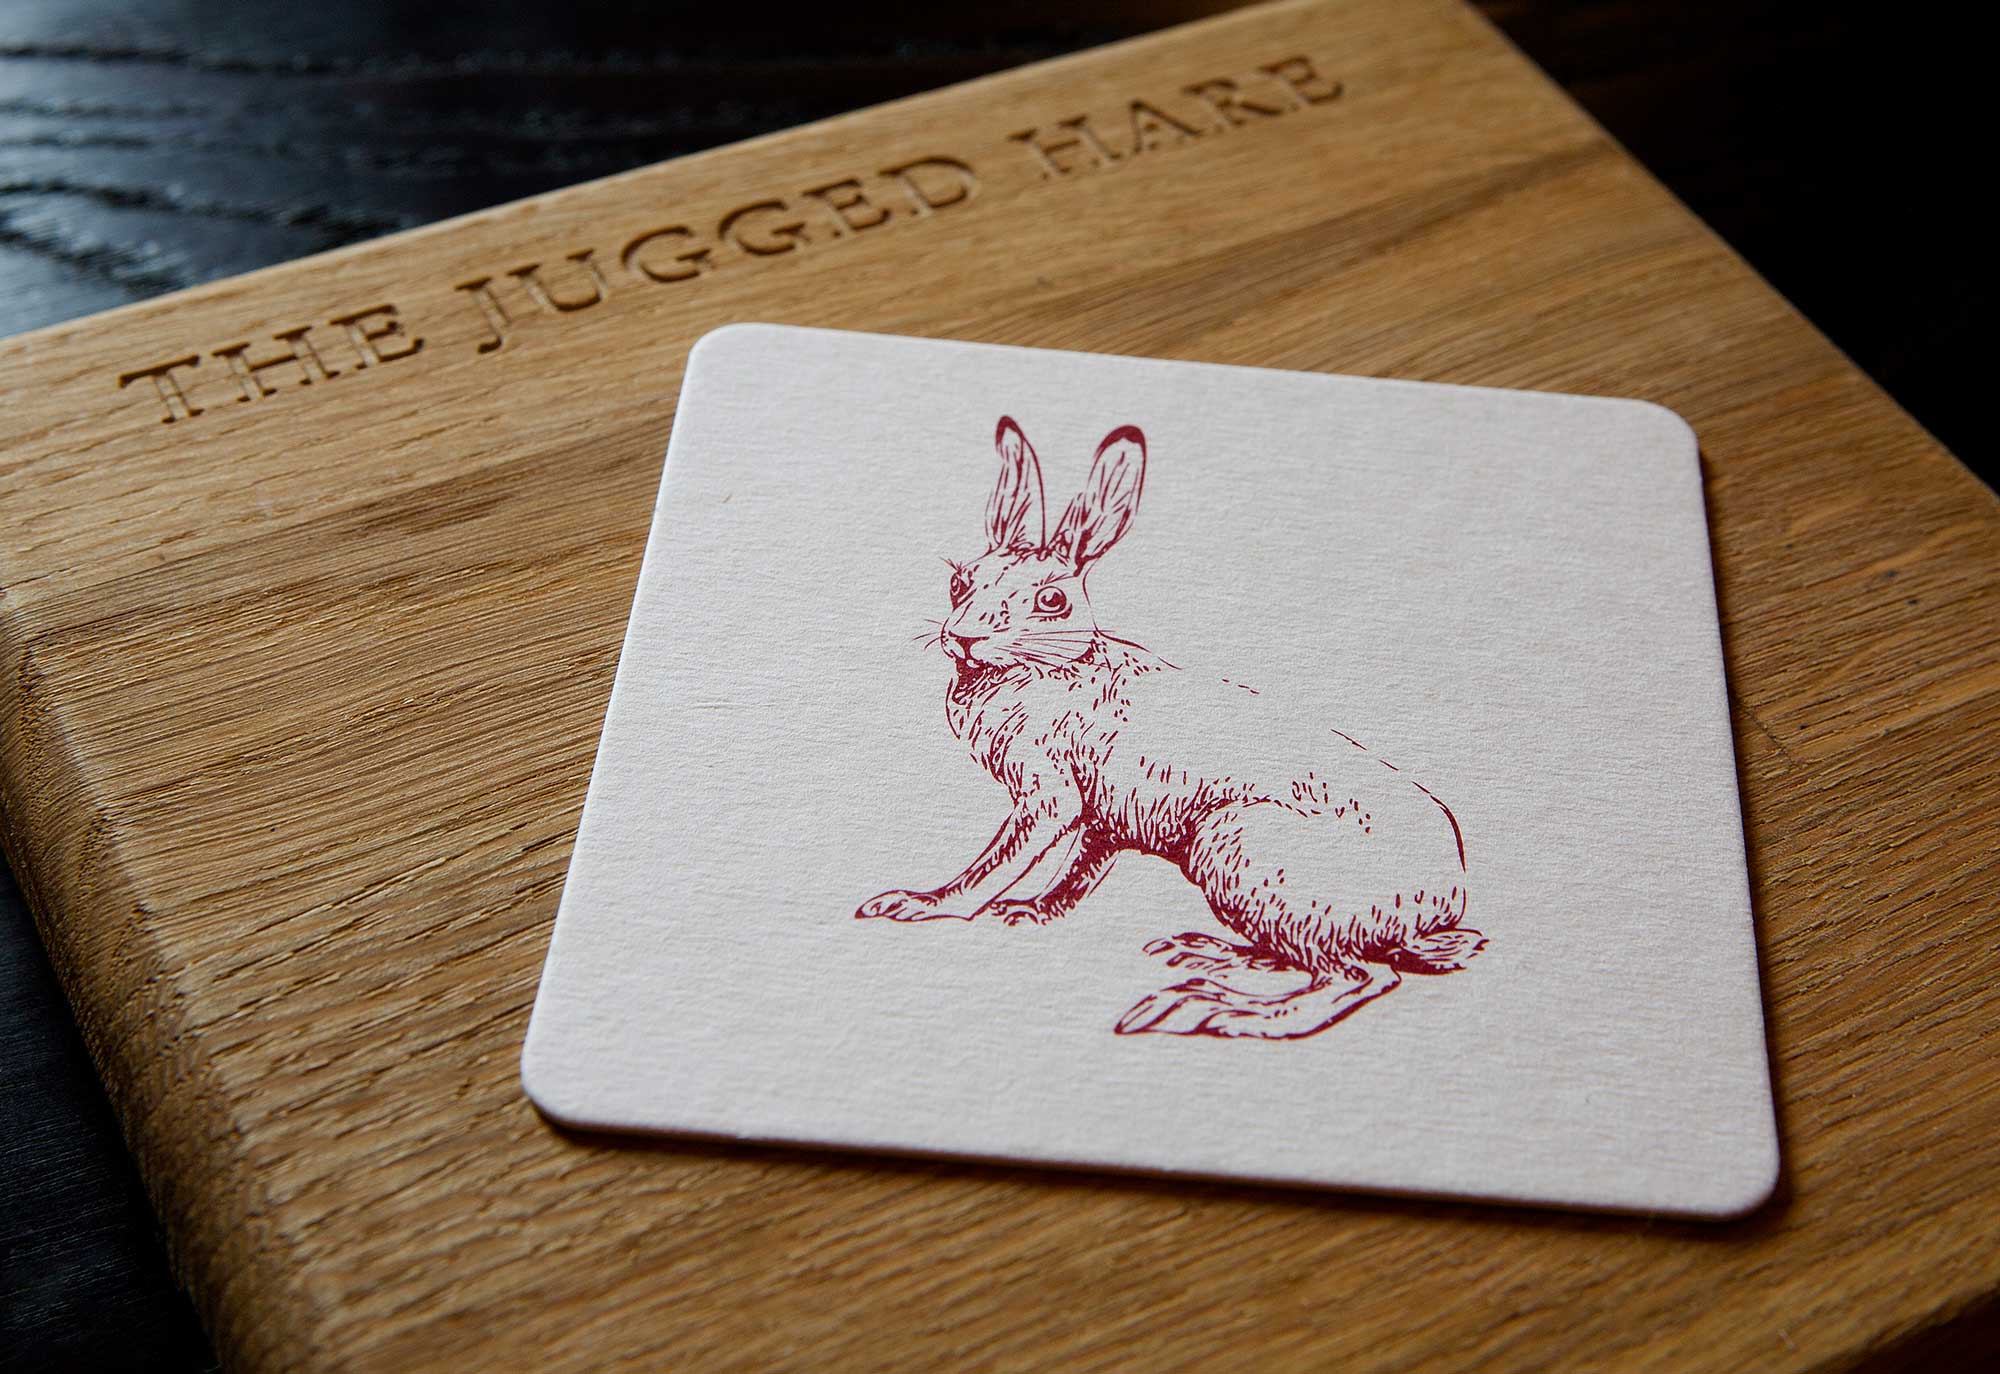 Jugged Hare branded coaster design